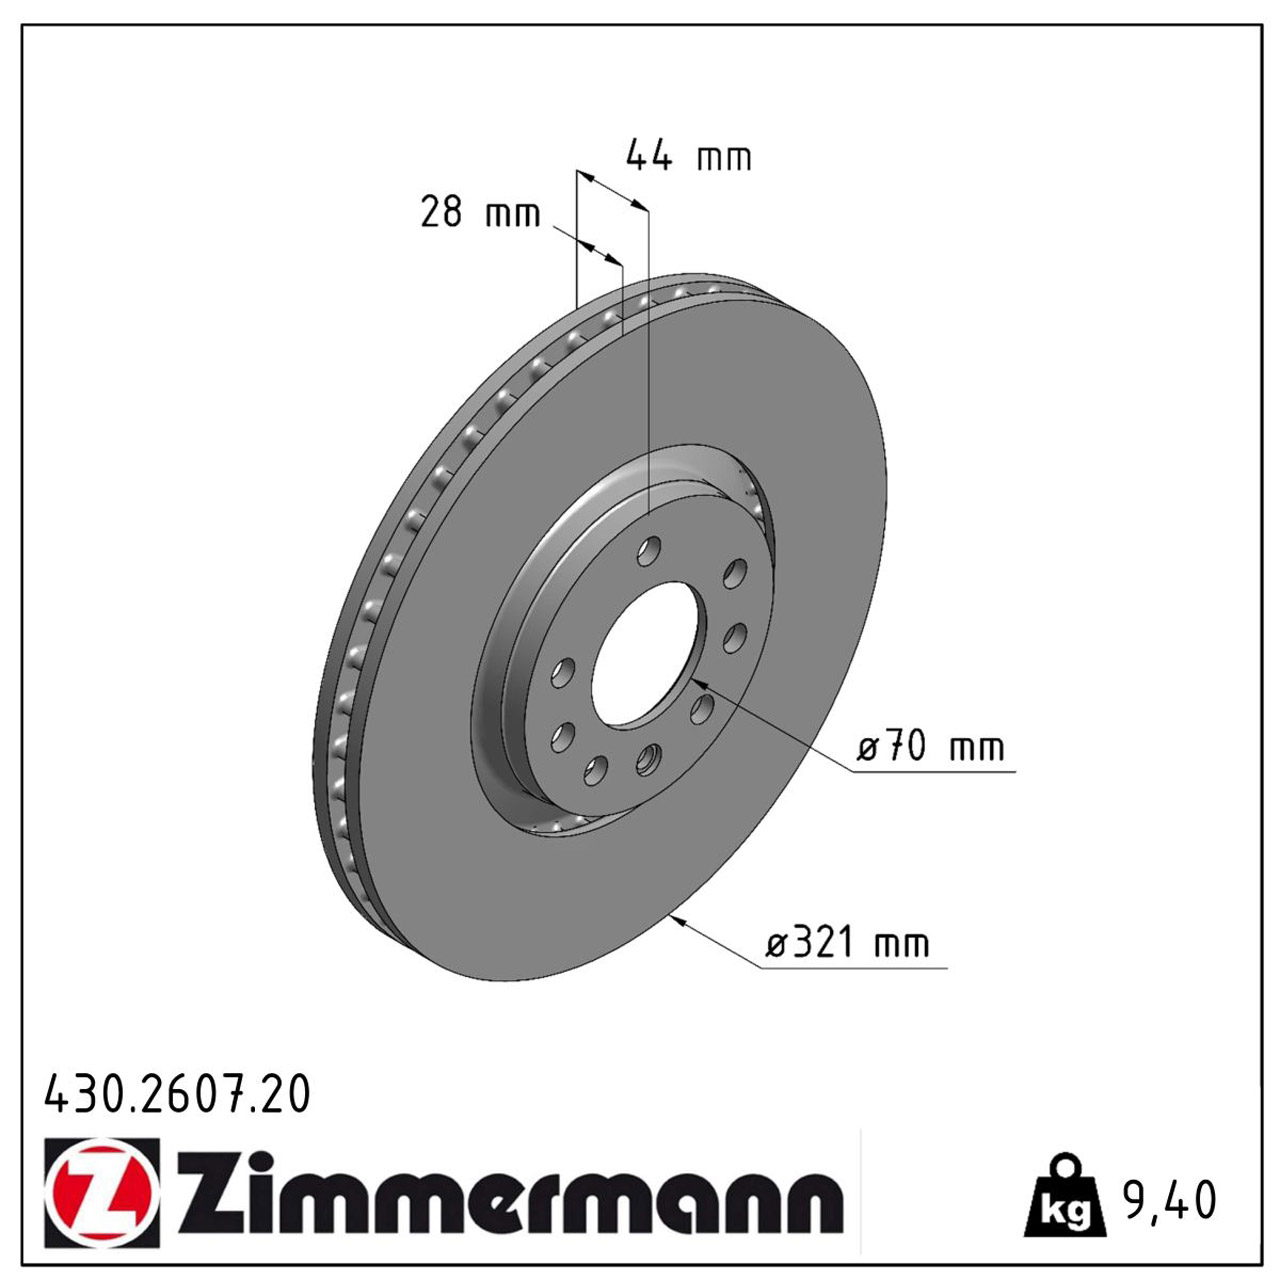 ZIMMERMANN Bremsscheiben + Bremsbeläge OPEL Astra H / GTC Zafira B OPC 240/241 PS vorne